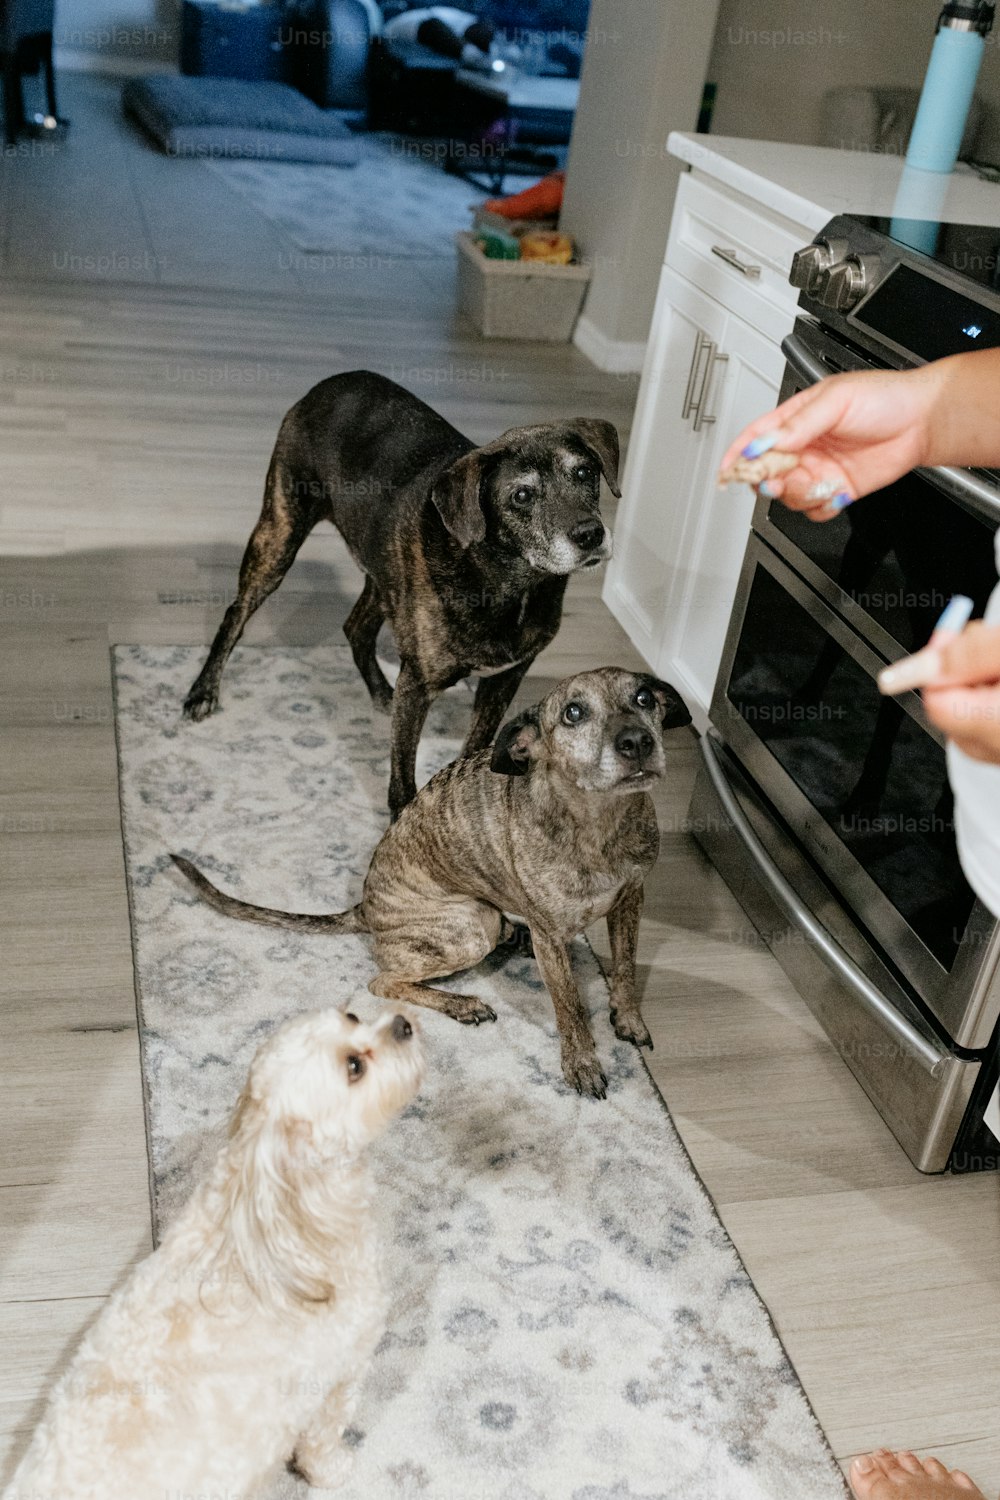 Un grupo de perros parados encima del piso de una cocina